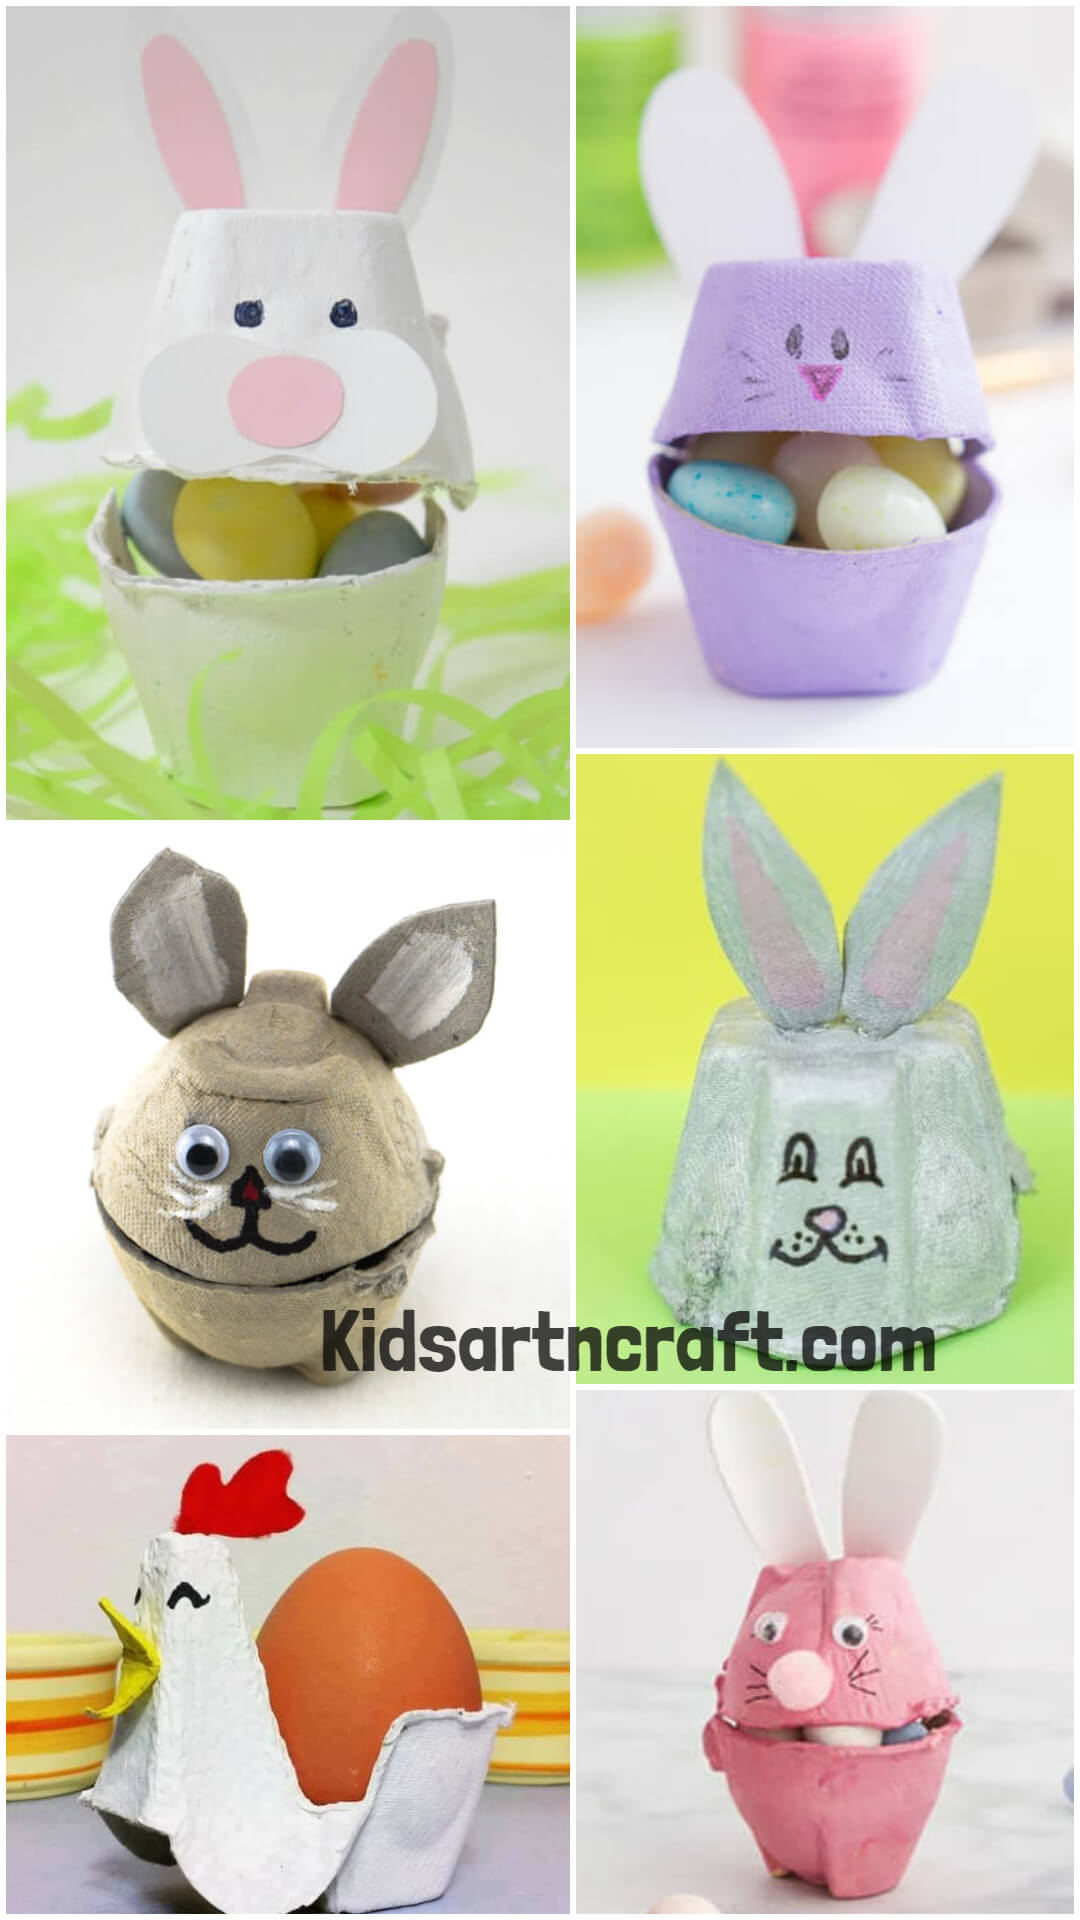 Egg Carton Easter Craft Ideas